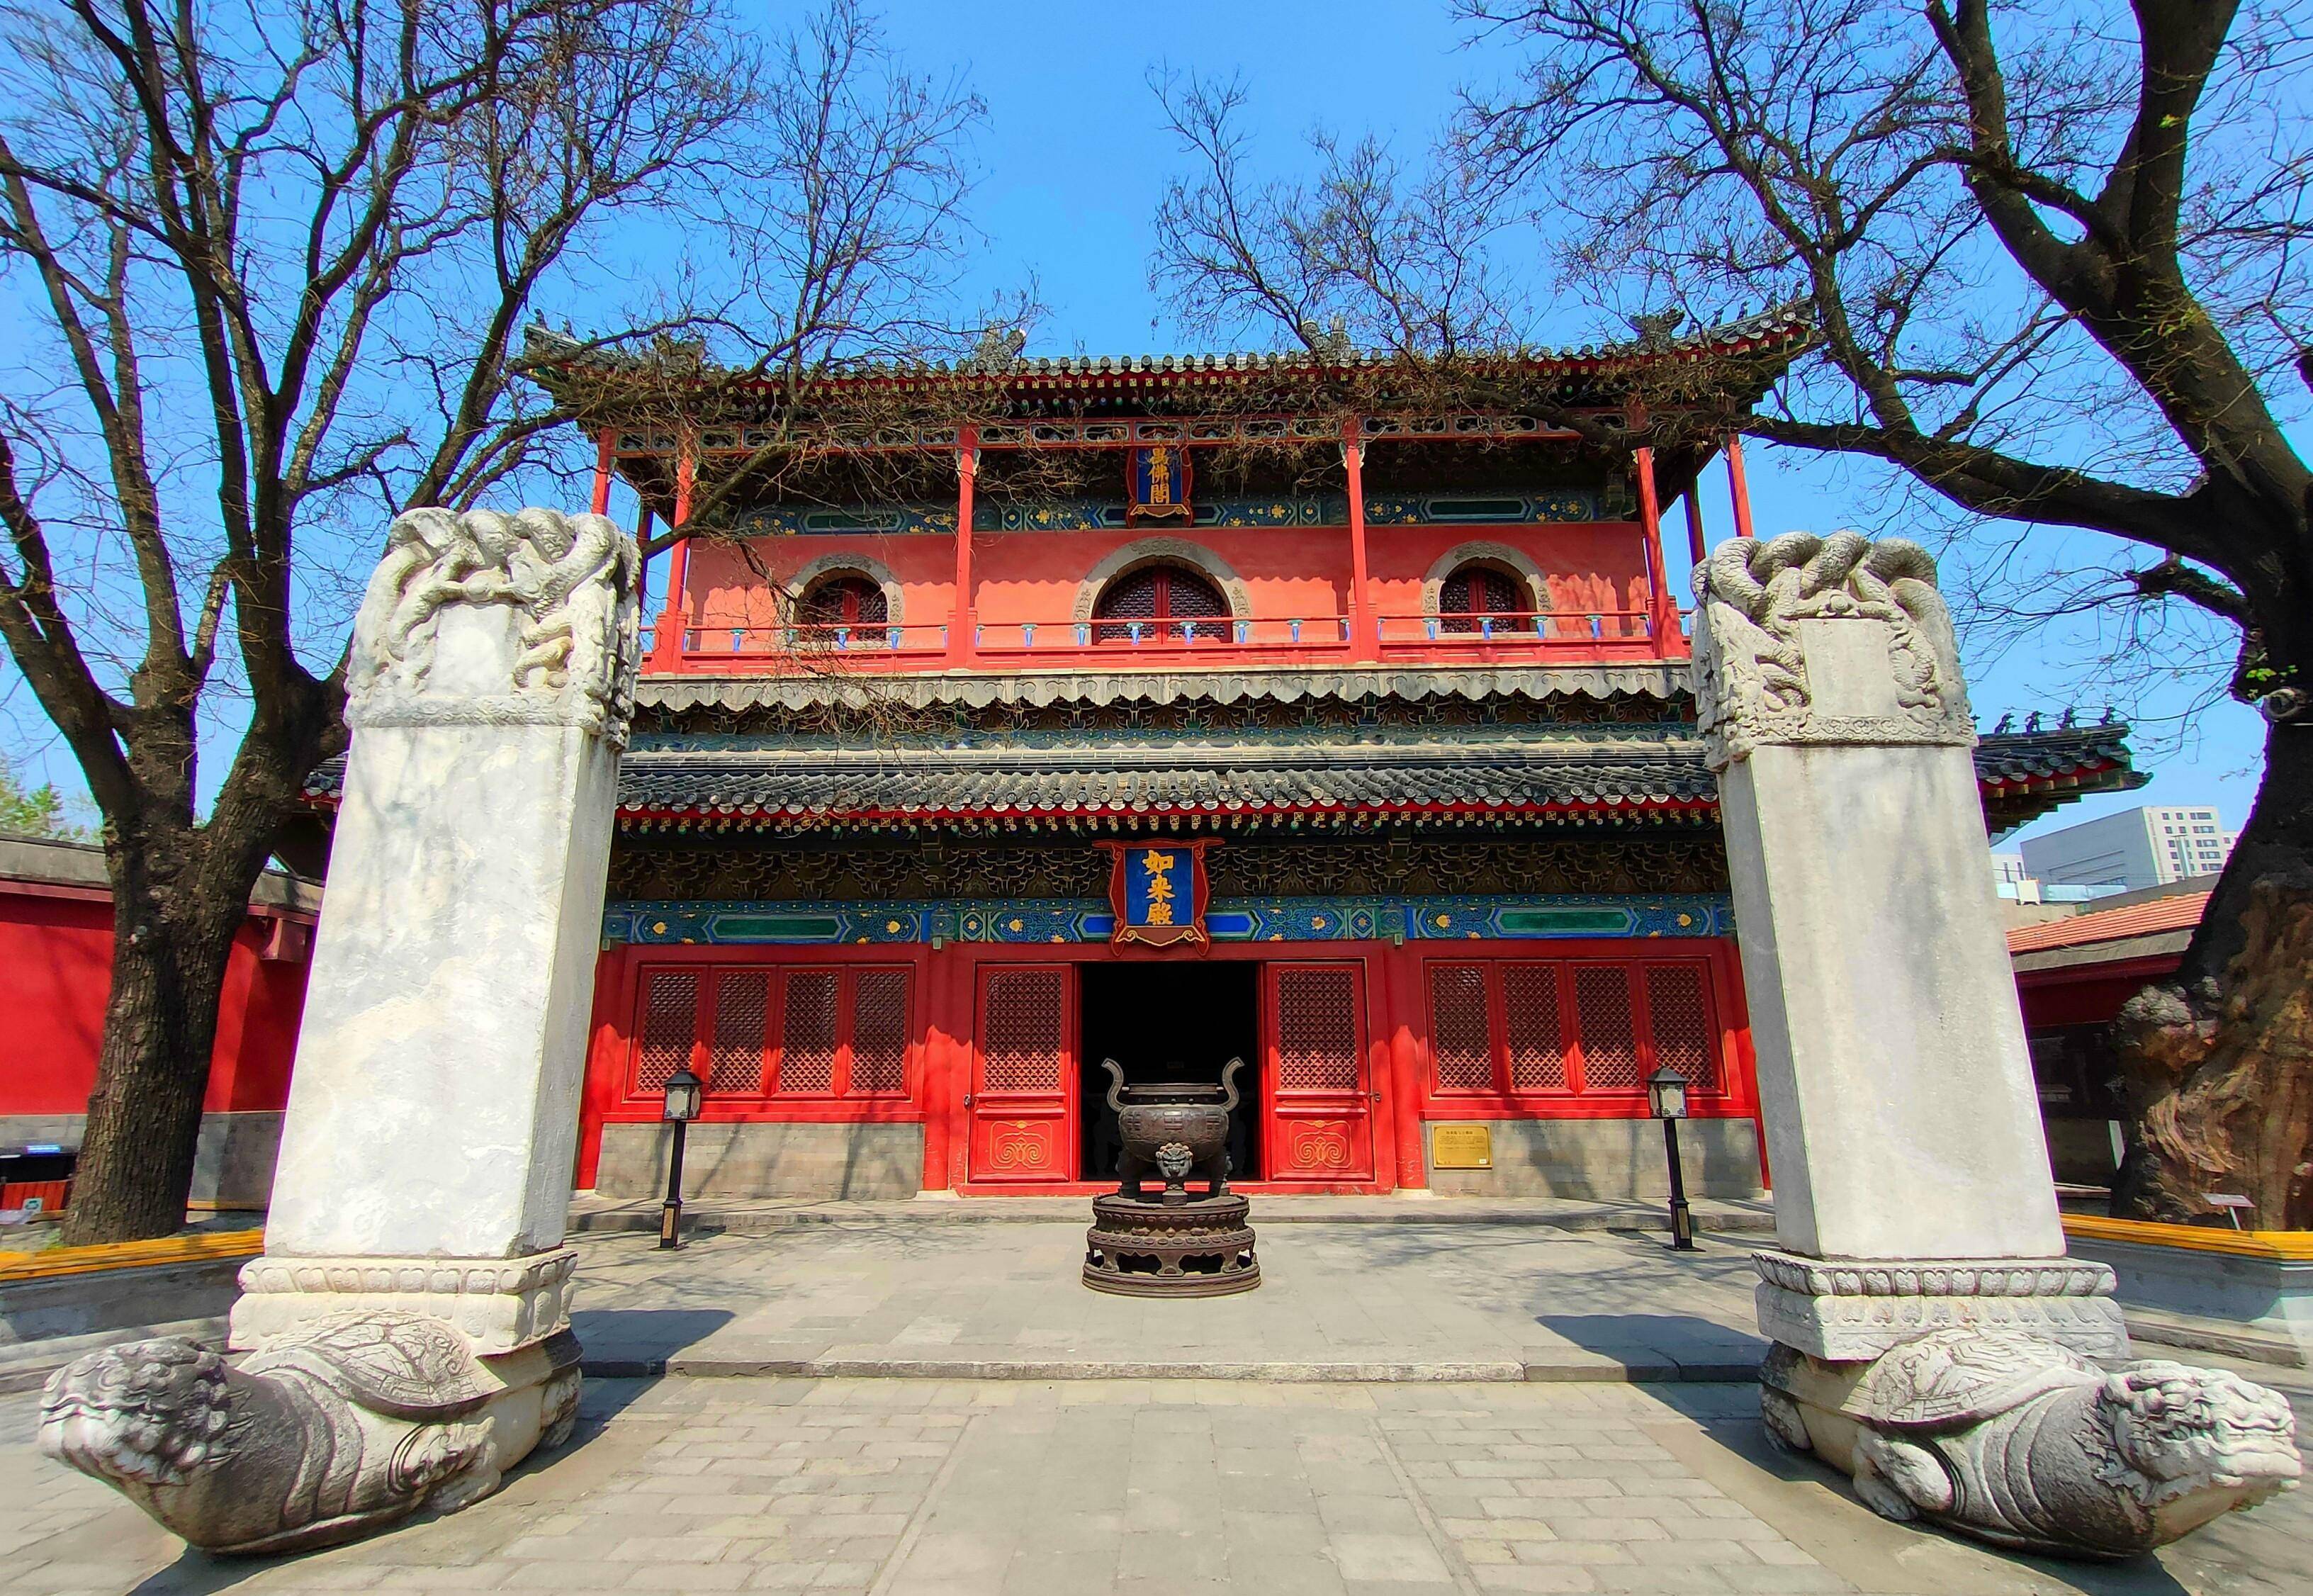 北京藏在写字楼旁冷门景点,罕见精美明朝纯木古庙,周三免费参观